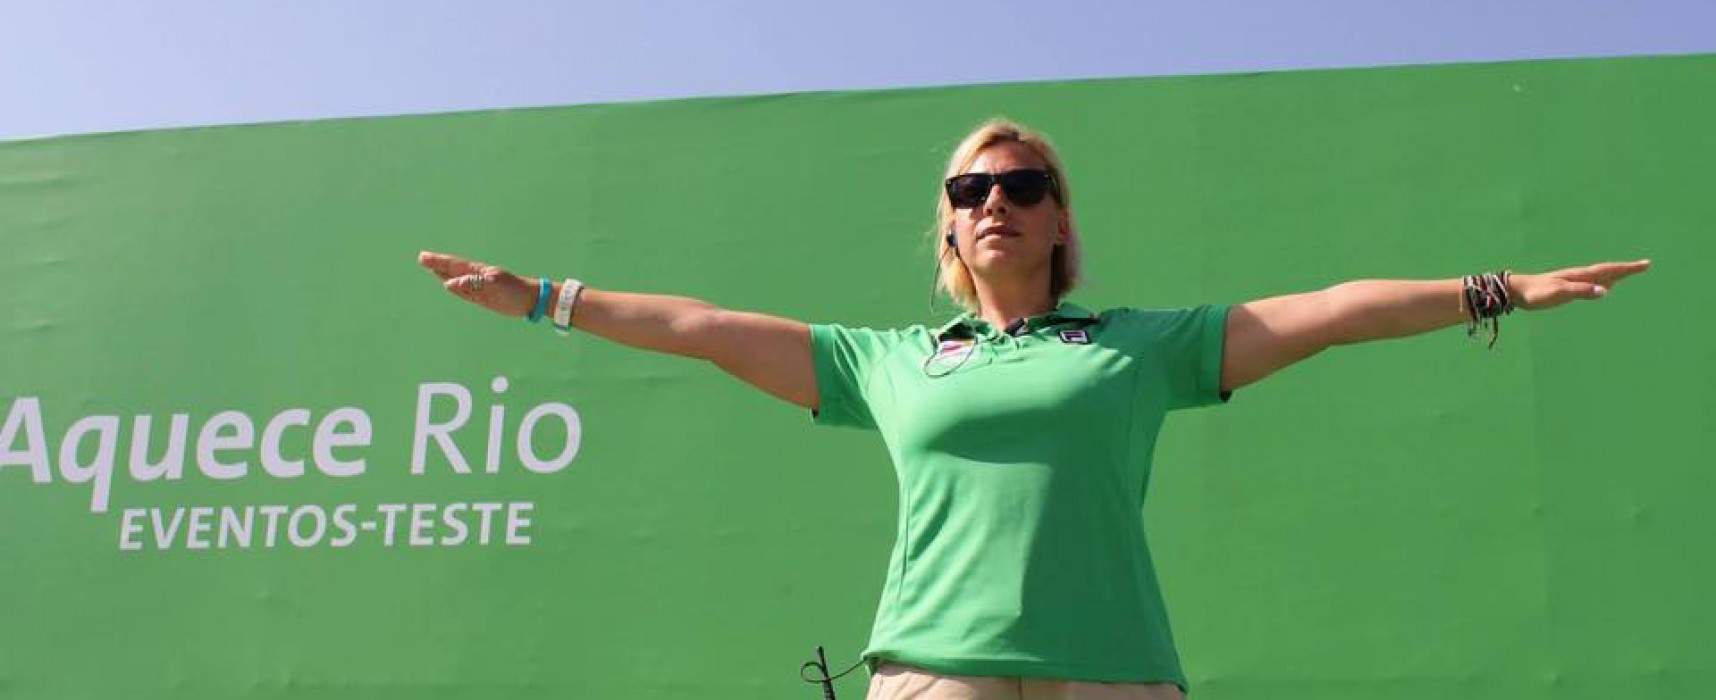 Η διεθνής κριτής Κατερίνα Πλακούδα στο Παγκόσμιο Πρωτάθλημα Κλειστού Χώρου στην Άγκυρα